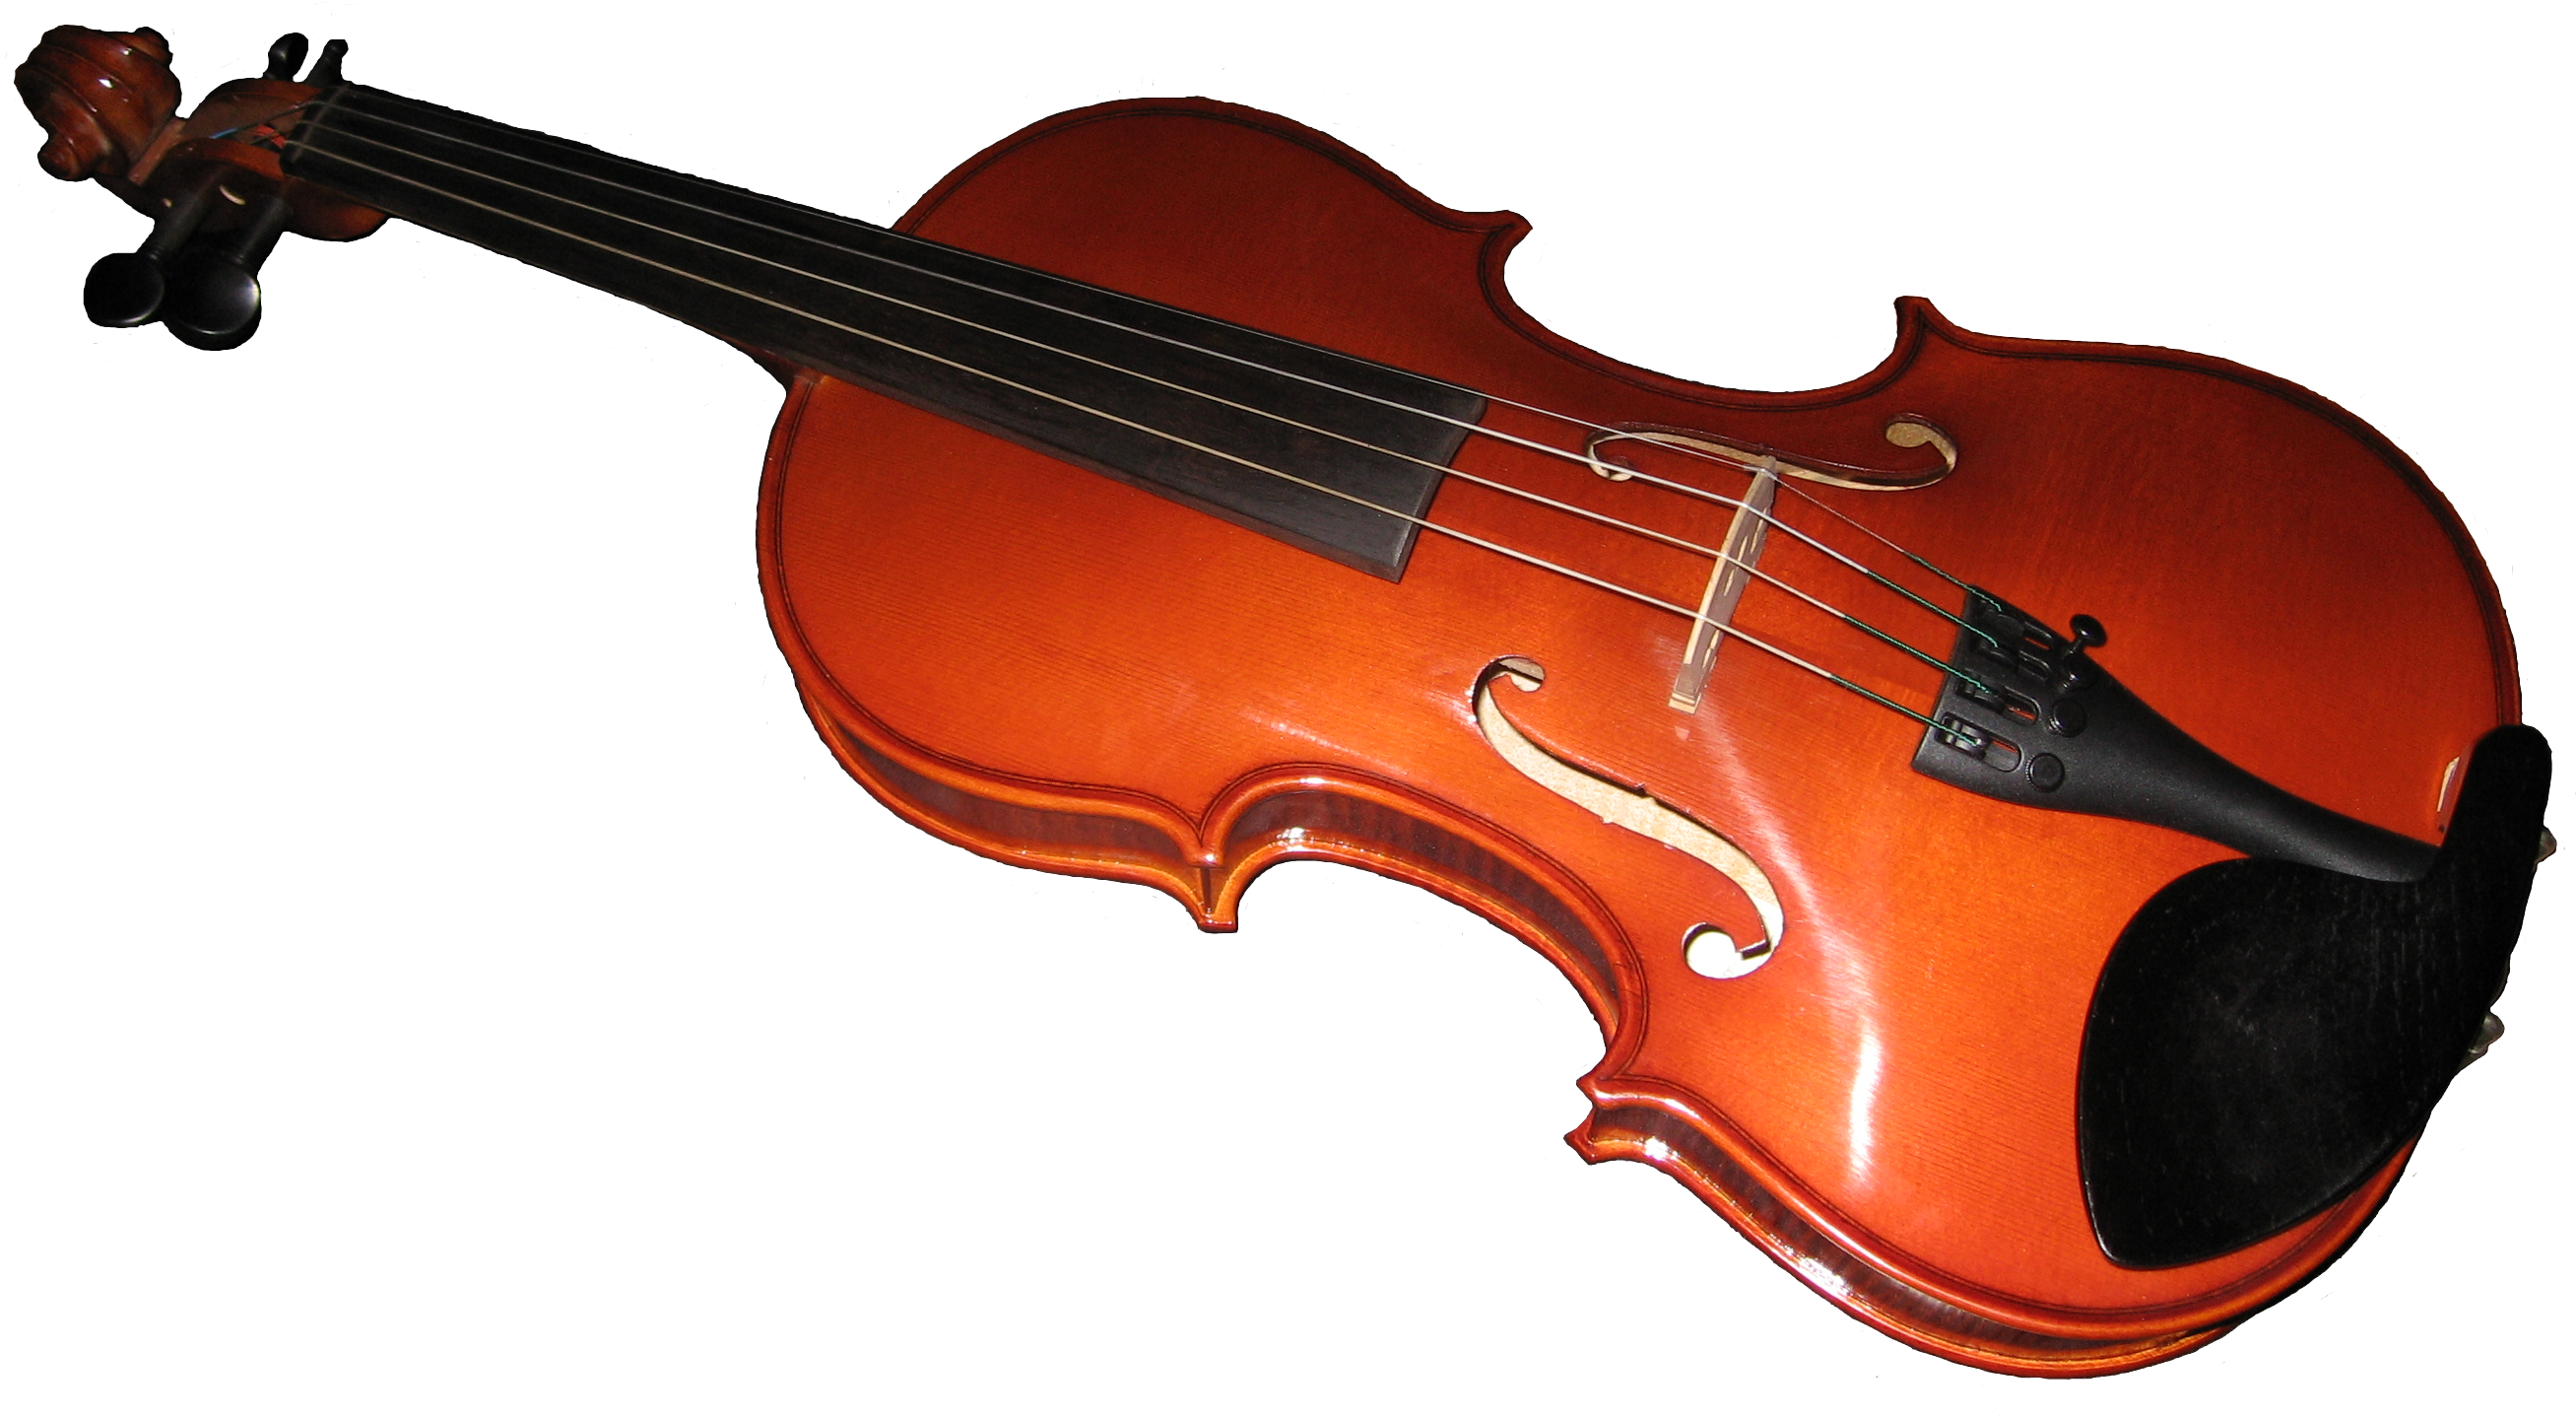 Альт (Виола) Viola. Скрипка. Альт музыкальный инструмент. Муз инструмент скрипка. Плагин скрипки